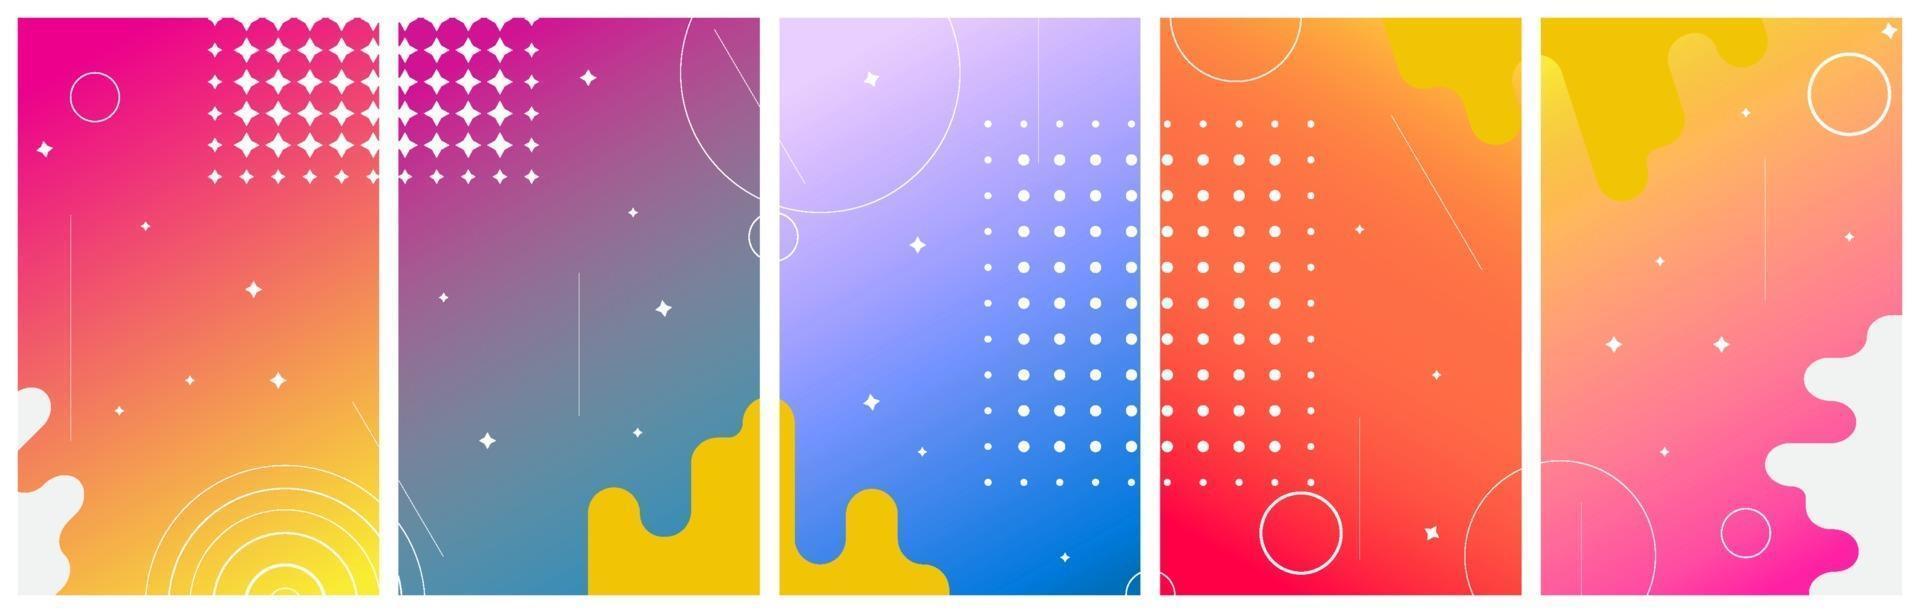 conjunto de colores de fondo abstracto con círculos para historias, redes sociales. ilustración vectorial vector